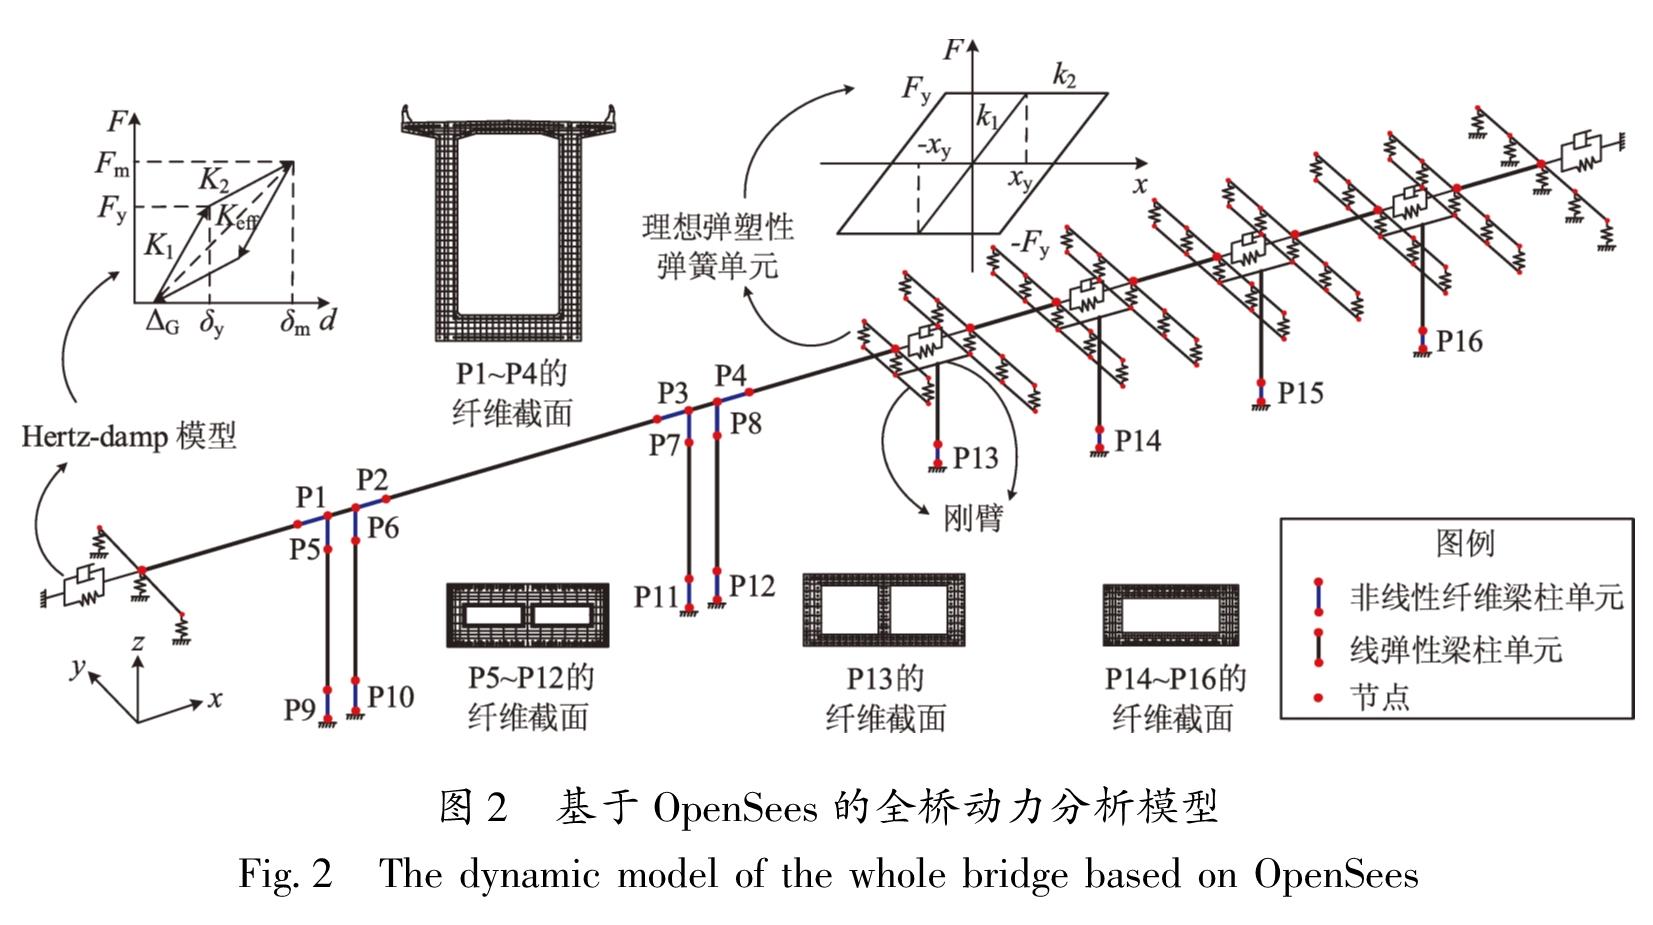 图2 基于OpenSees的全桥动力分析模型<br/>Fig.2 The dynamic model of the whole bridge based on OpenSees